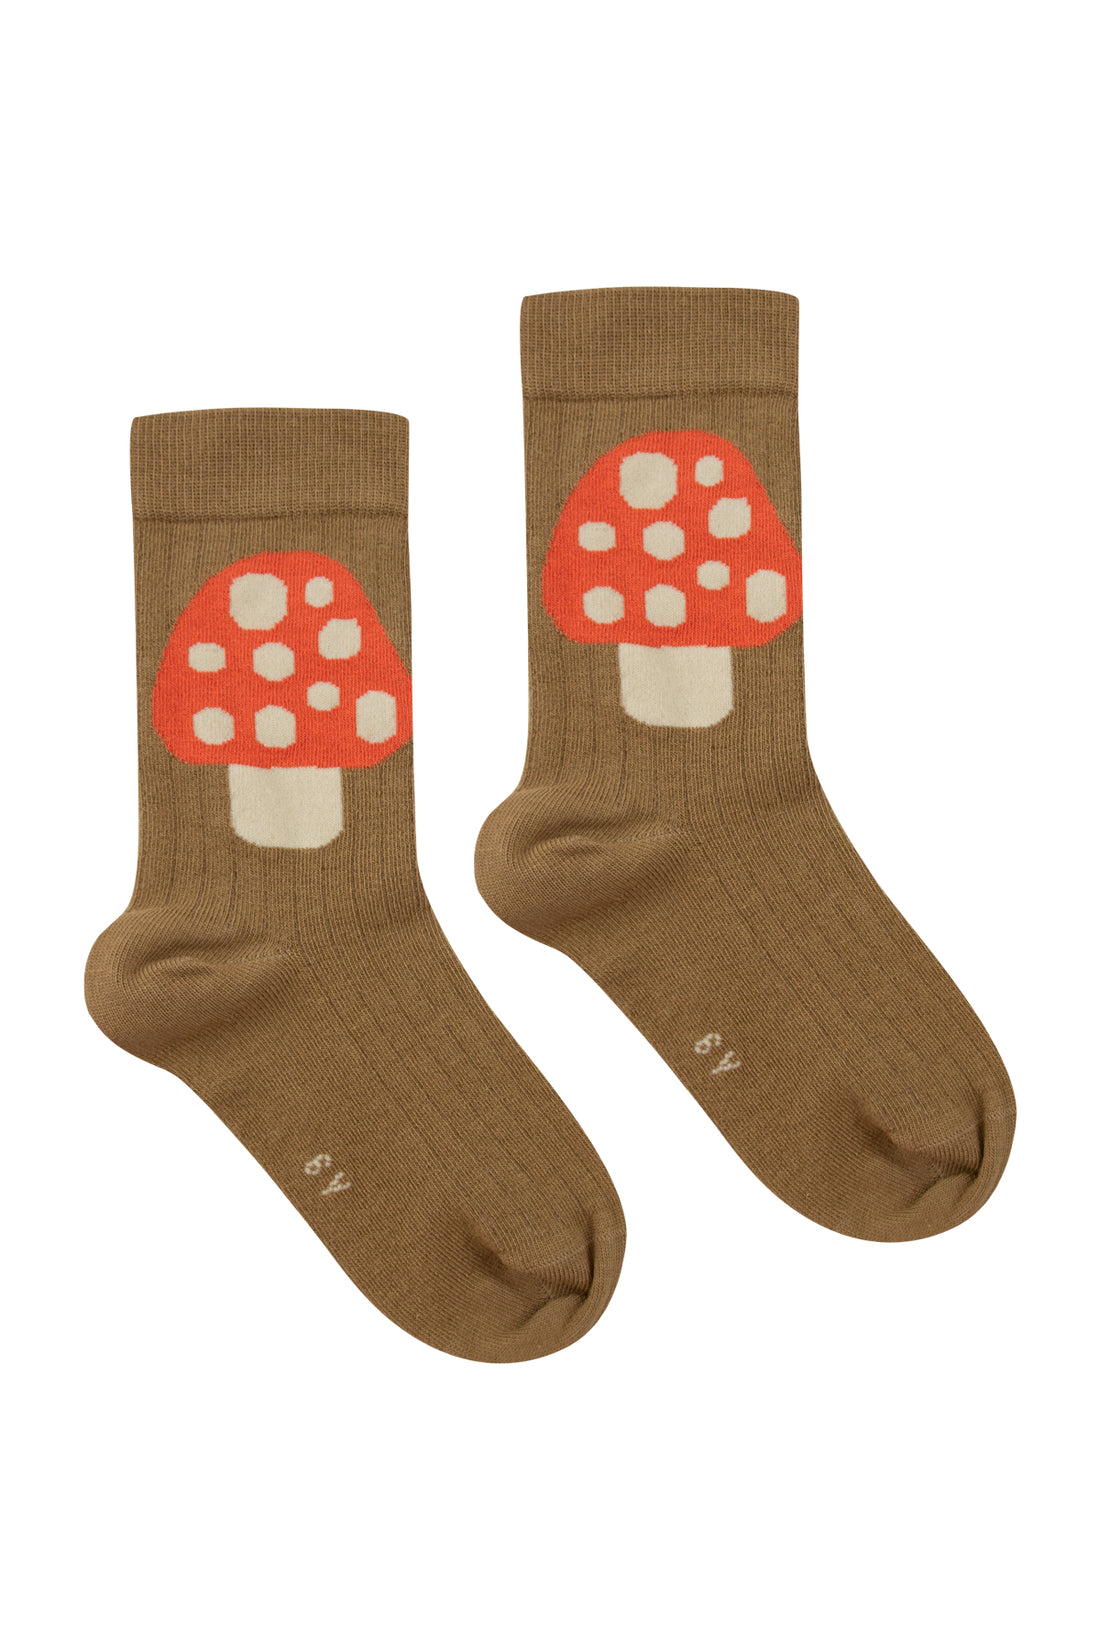 Mushroom Medium Socks - Parkette.